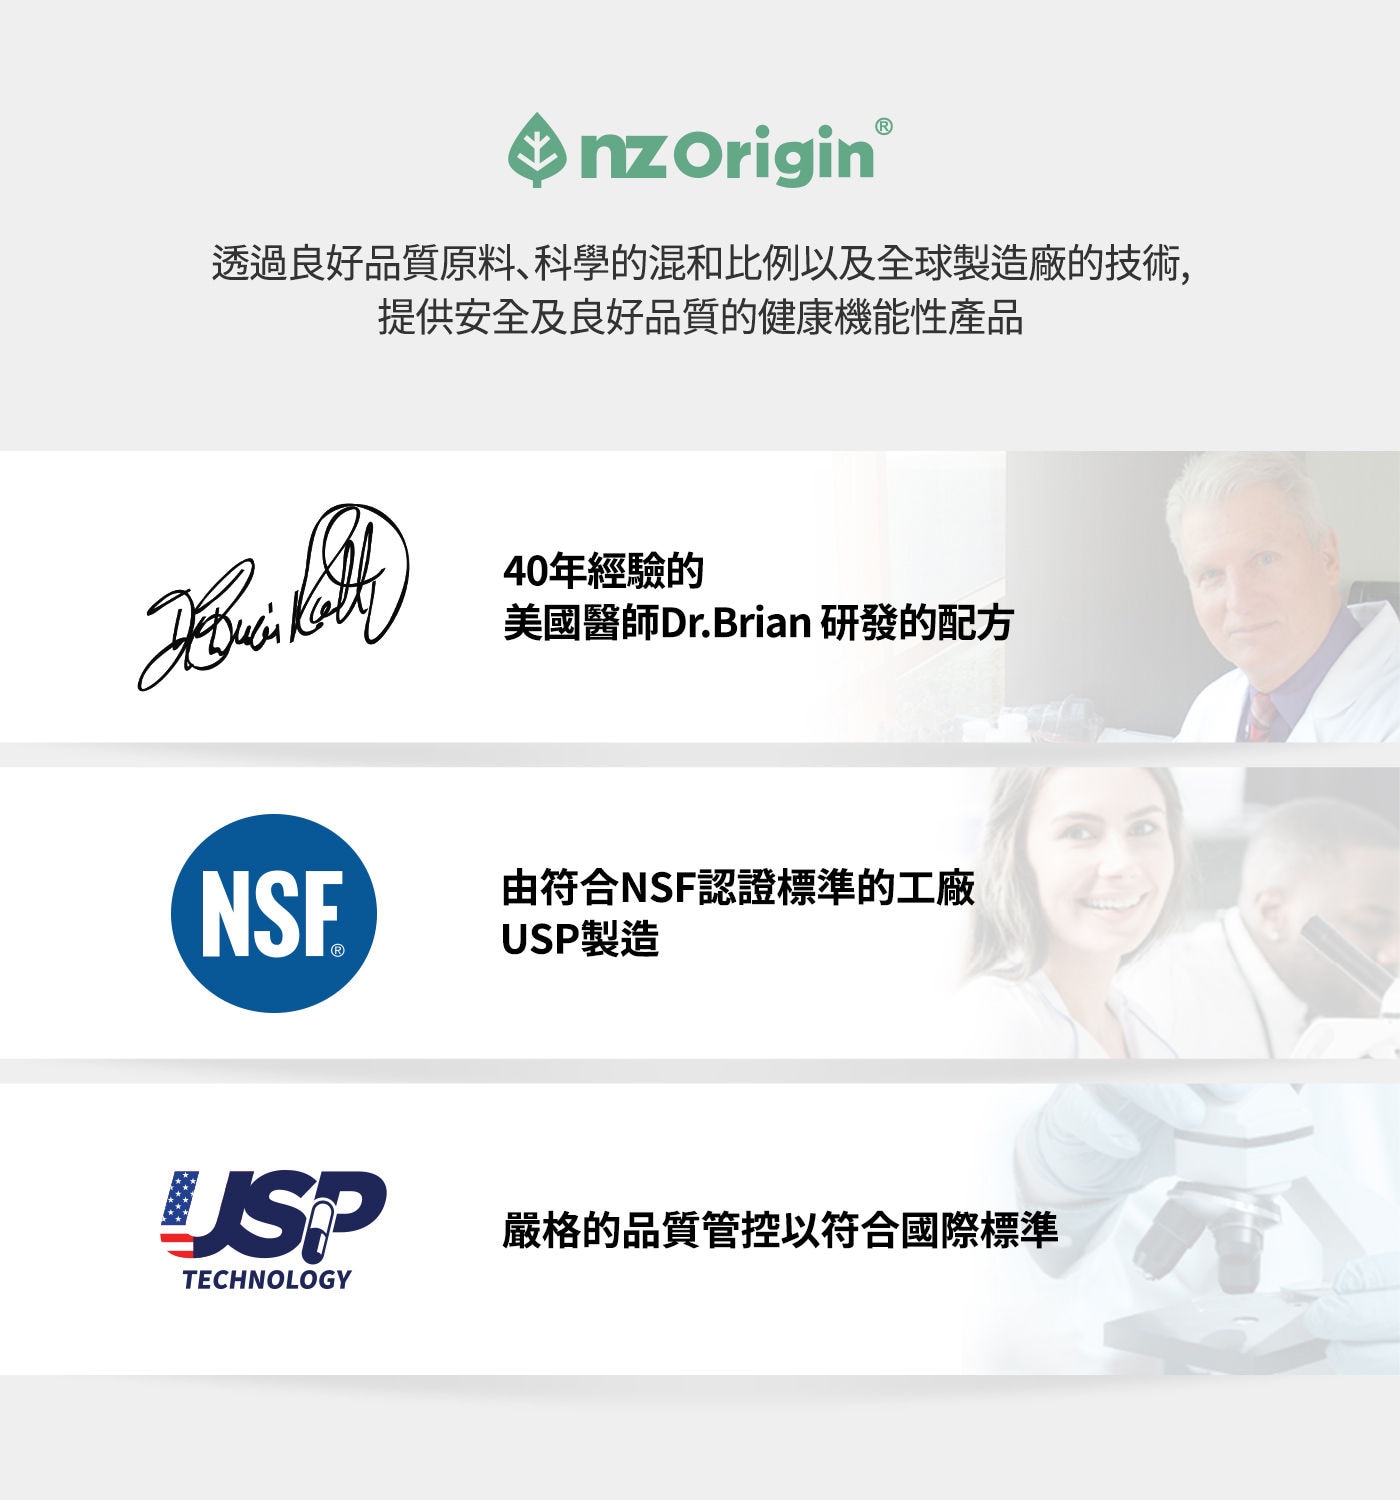 Nz Origin 綠唇貽貝萃取膠囊 60粒，透過良好品質原料、科學的混合比例以及全球製造廠的技術，提供安全及良好品質的健康機能性產品。40年經驗的美國醫師Dr. Brian研發的配方